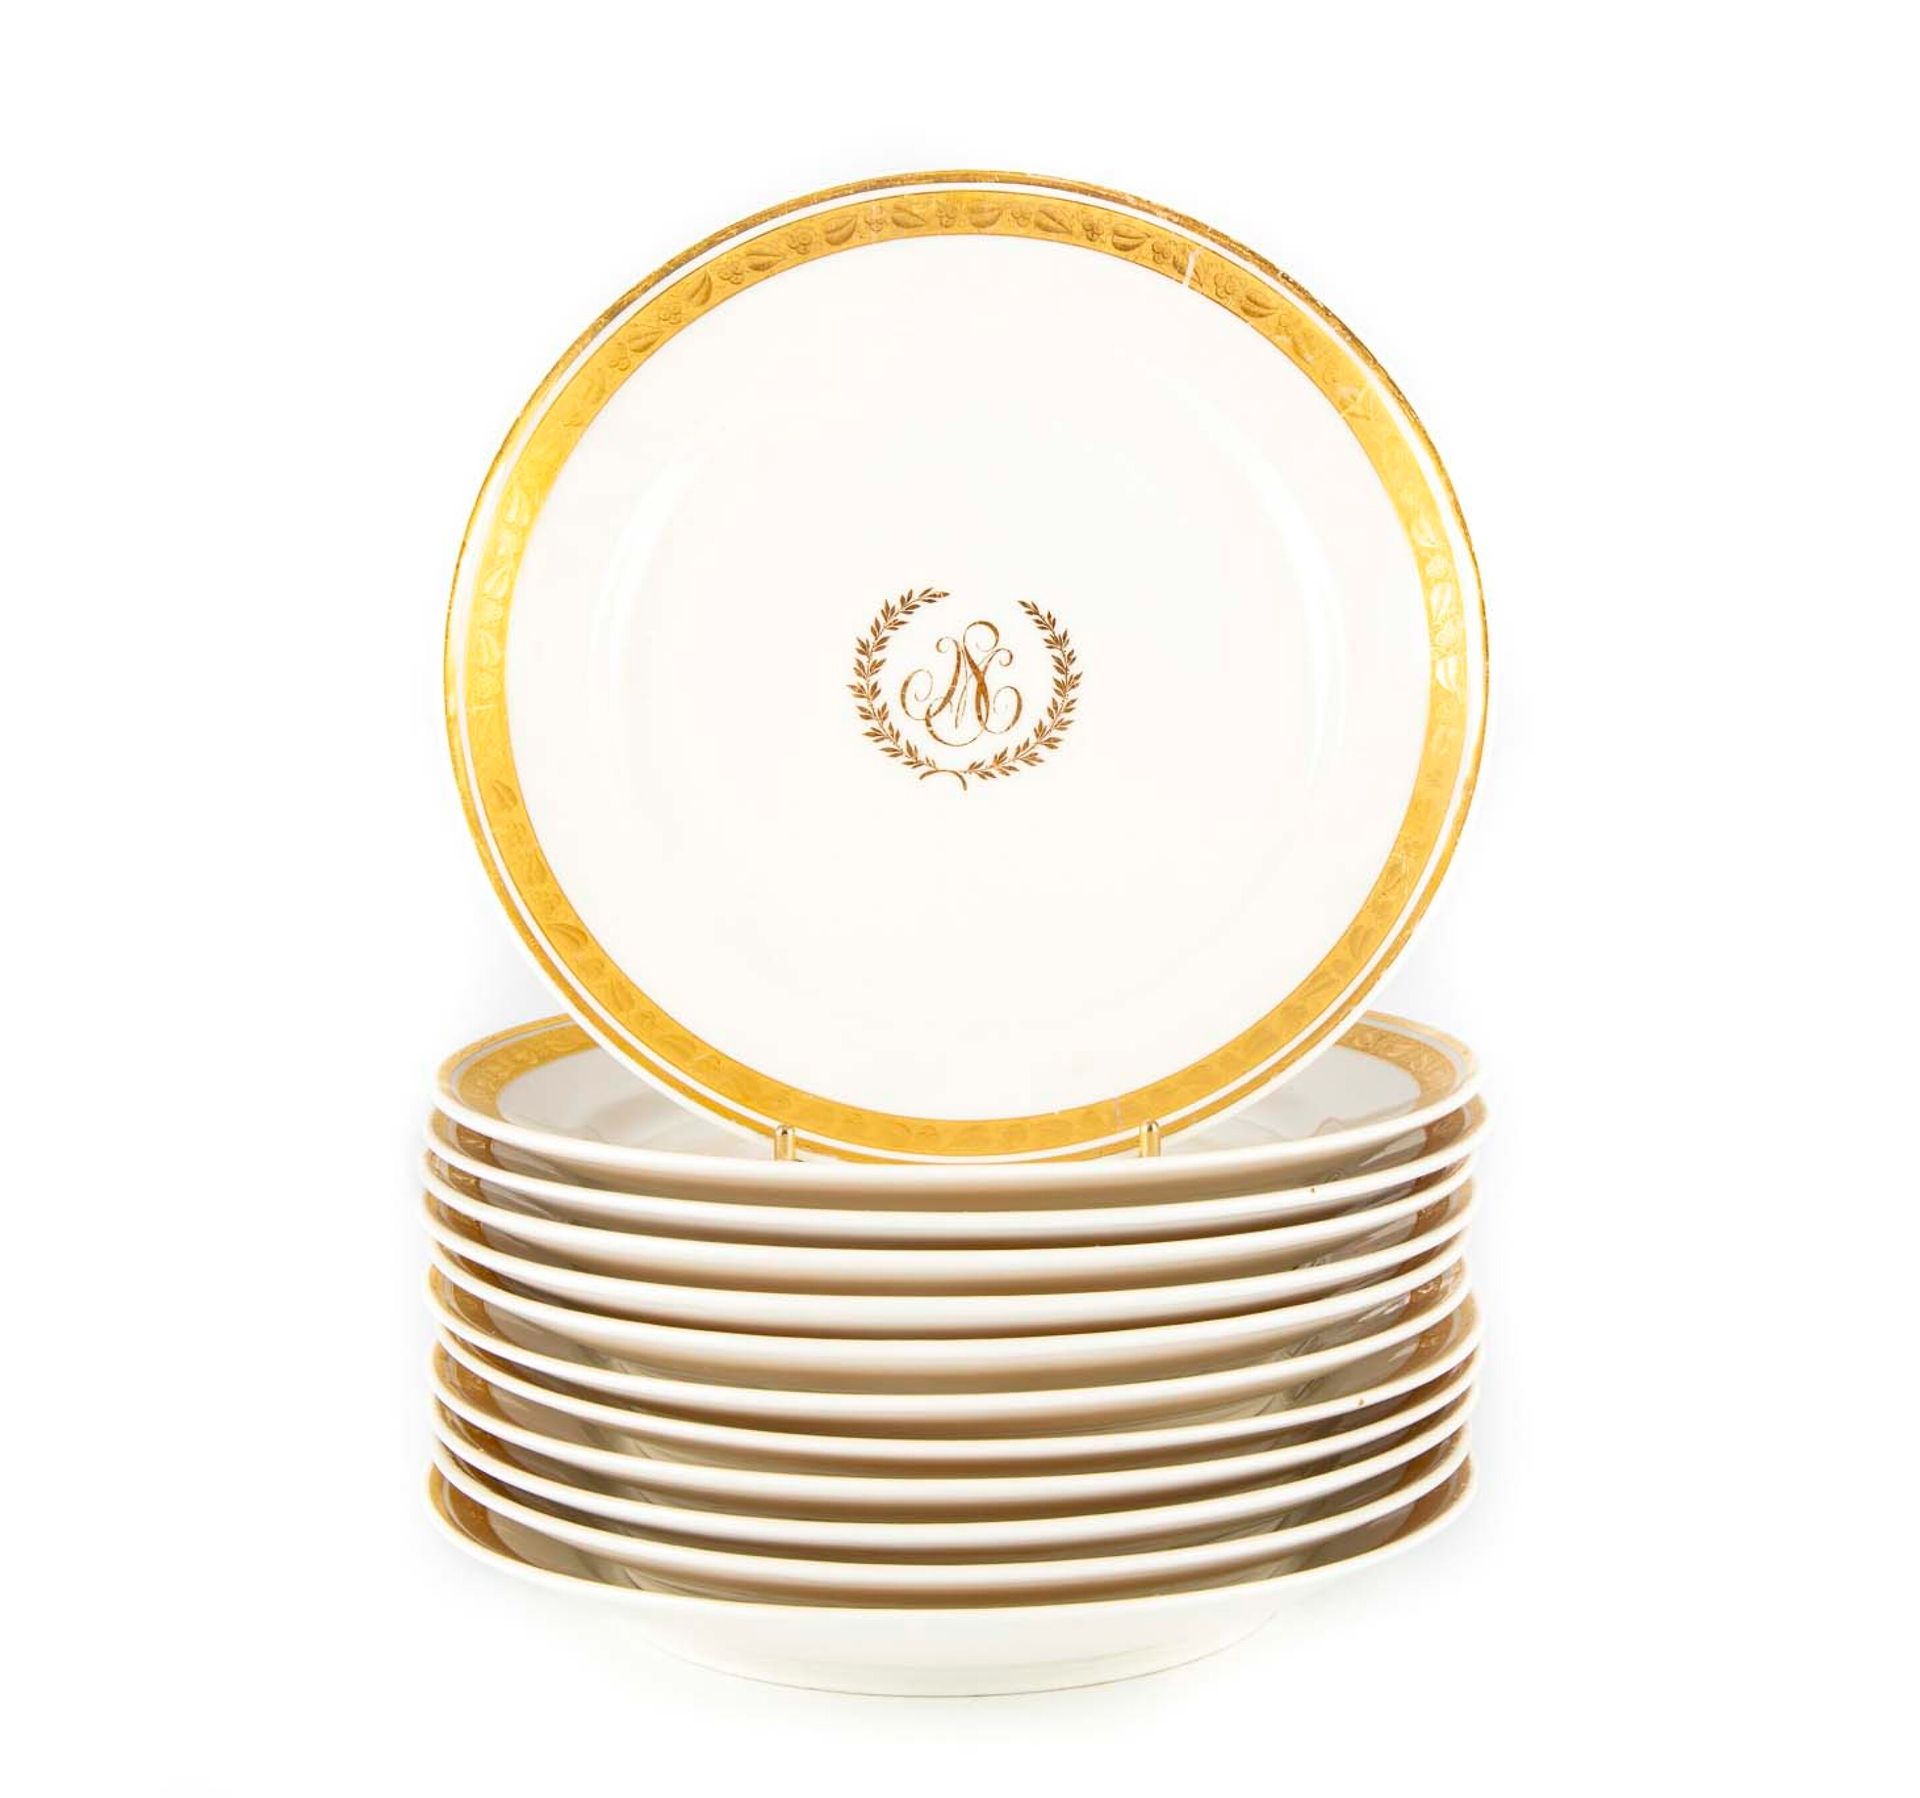 PARIS PARIS

Suite de12 assiettes en porcelaine blanche à liseret doré ciselé de&hellip;